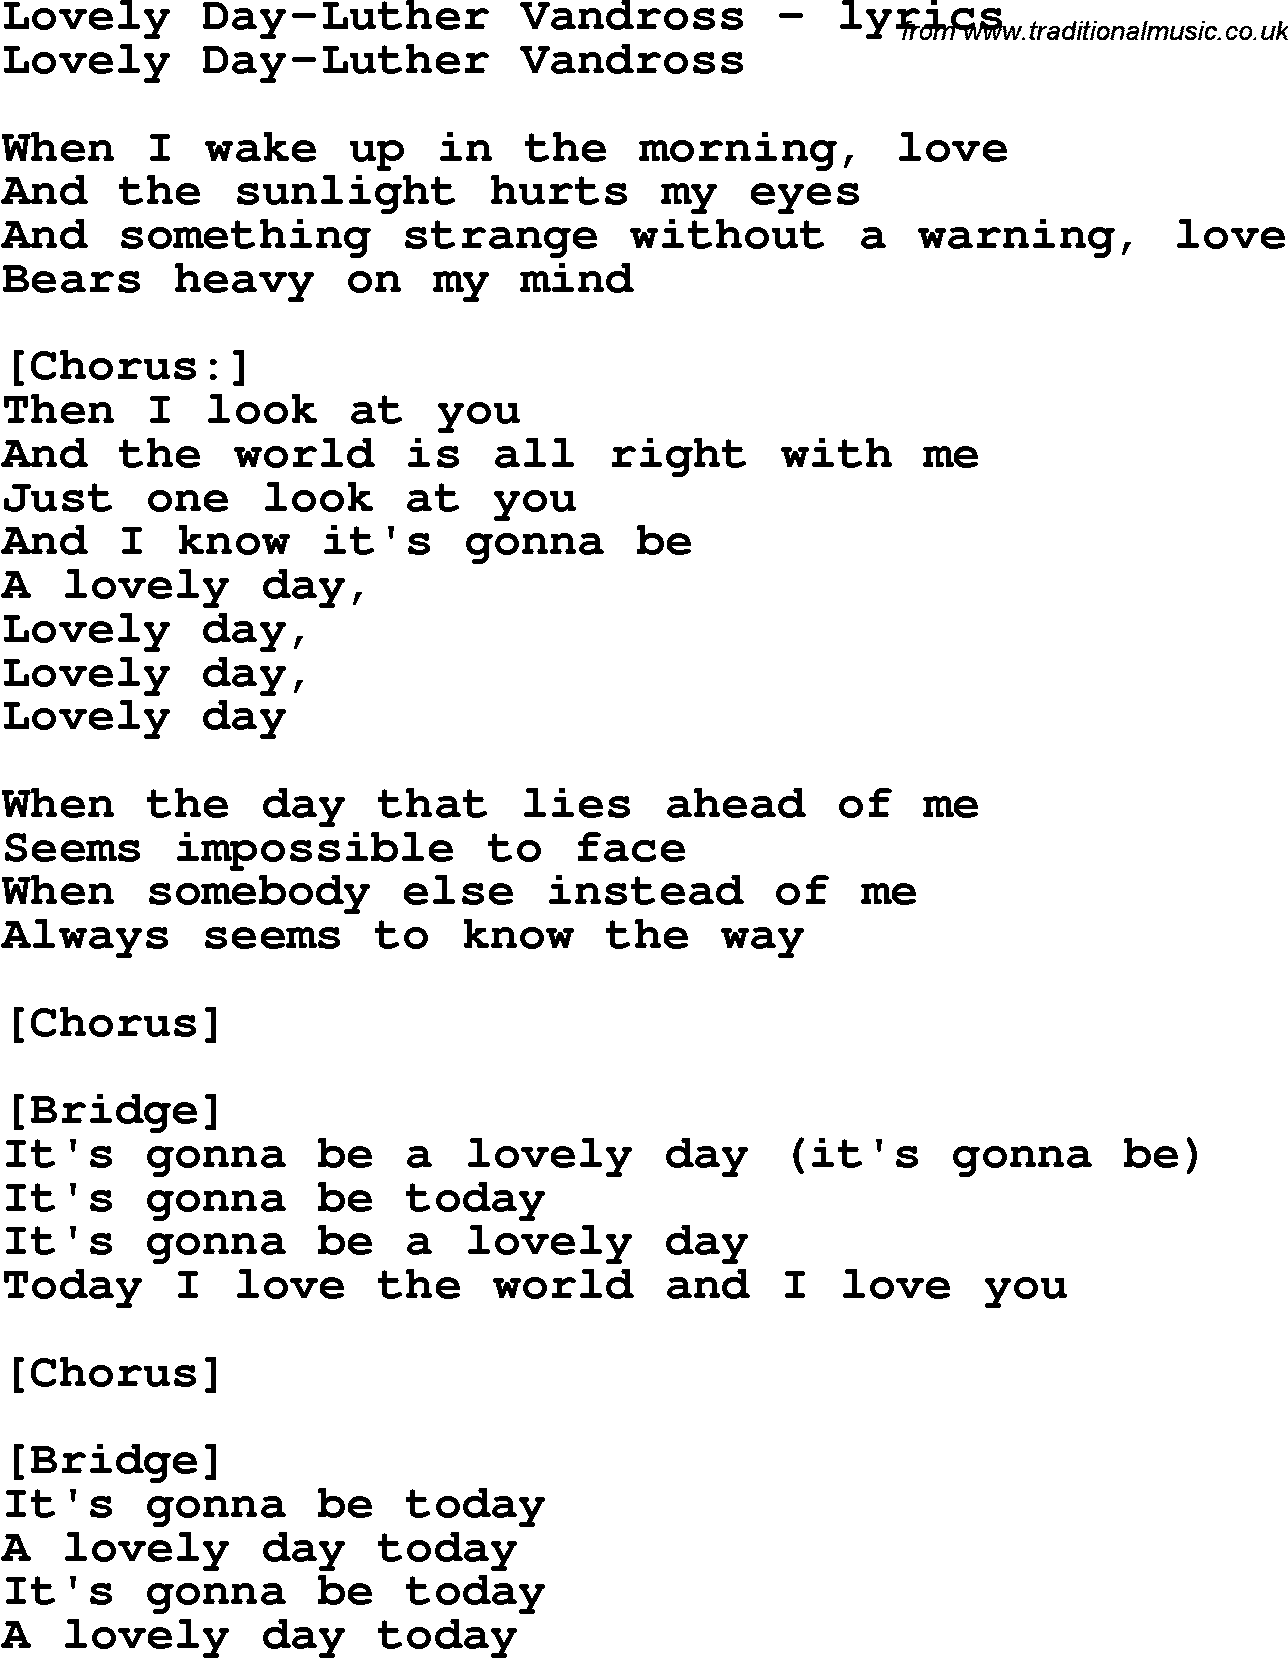 Love Song Lyrics for: Lovely Day-Luther Vandross